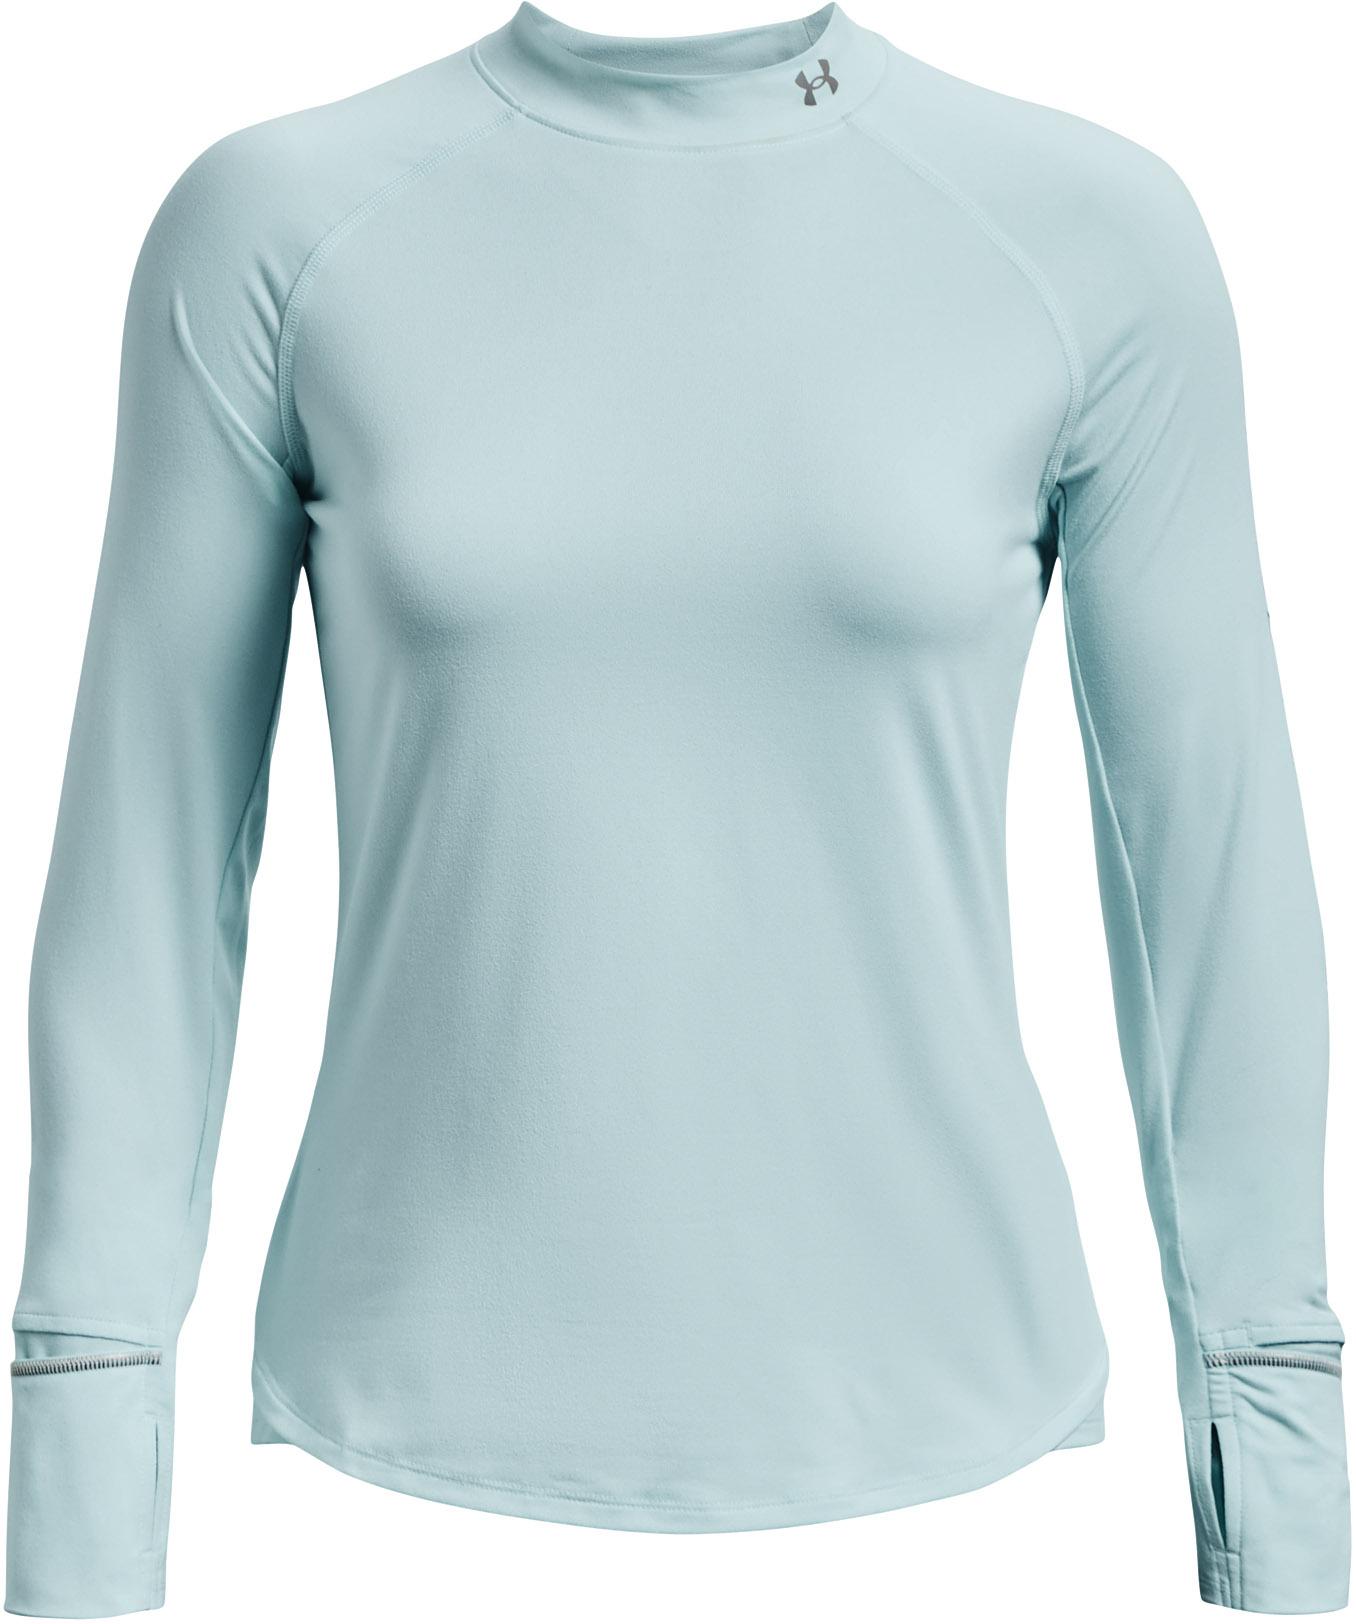 Under Armour the Funktionsshirt Damen fuse teal-fuse teal-reflective Online Shop von SportScheck kaufen